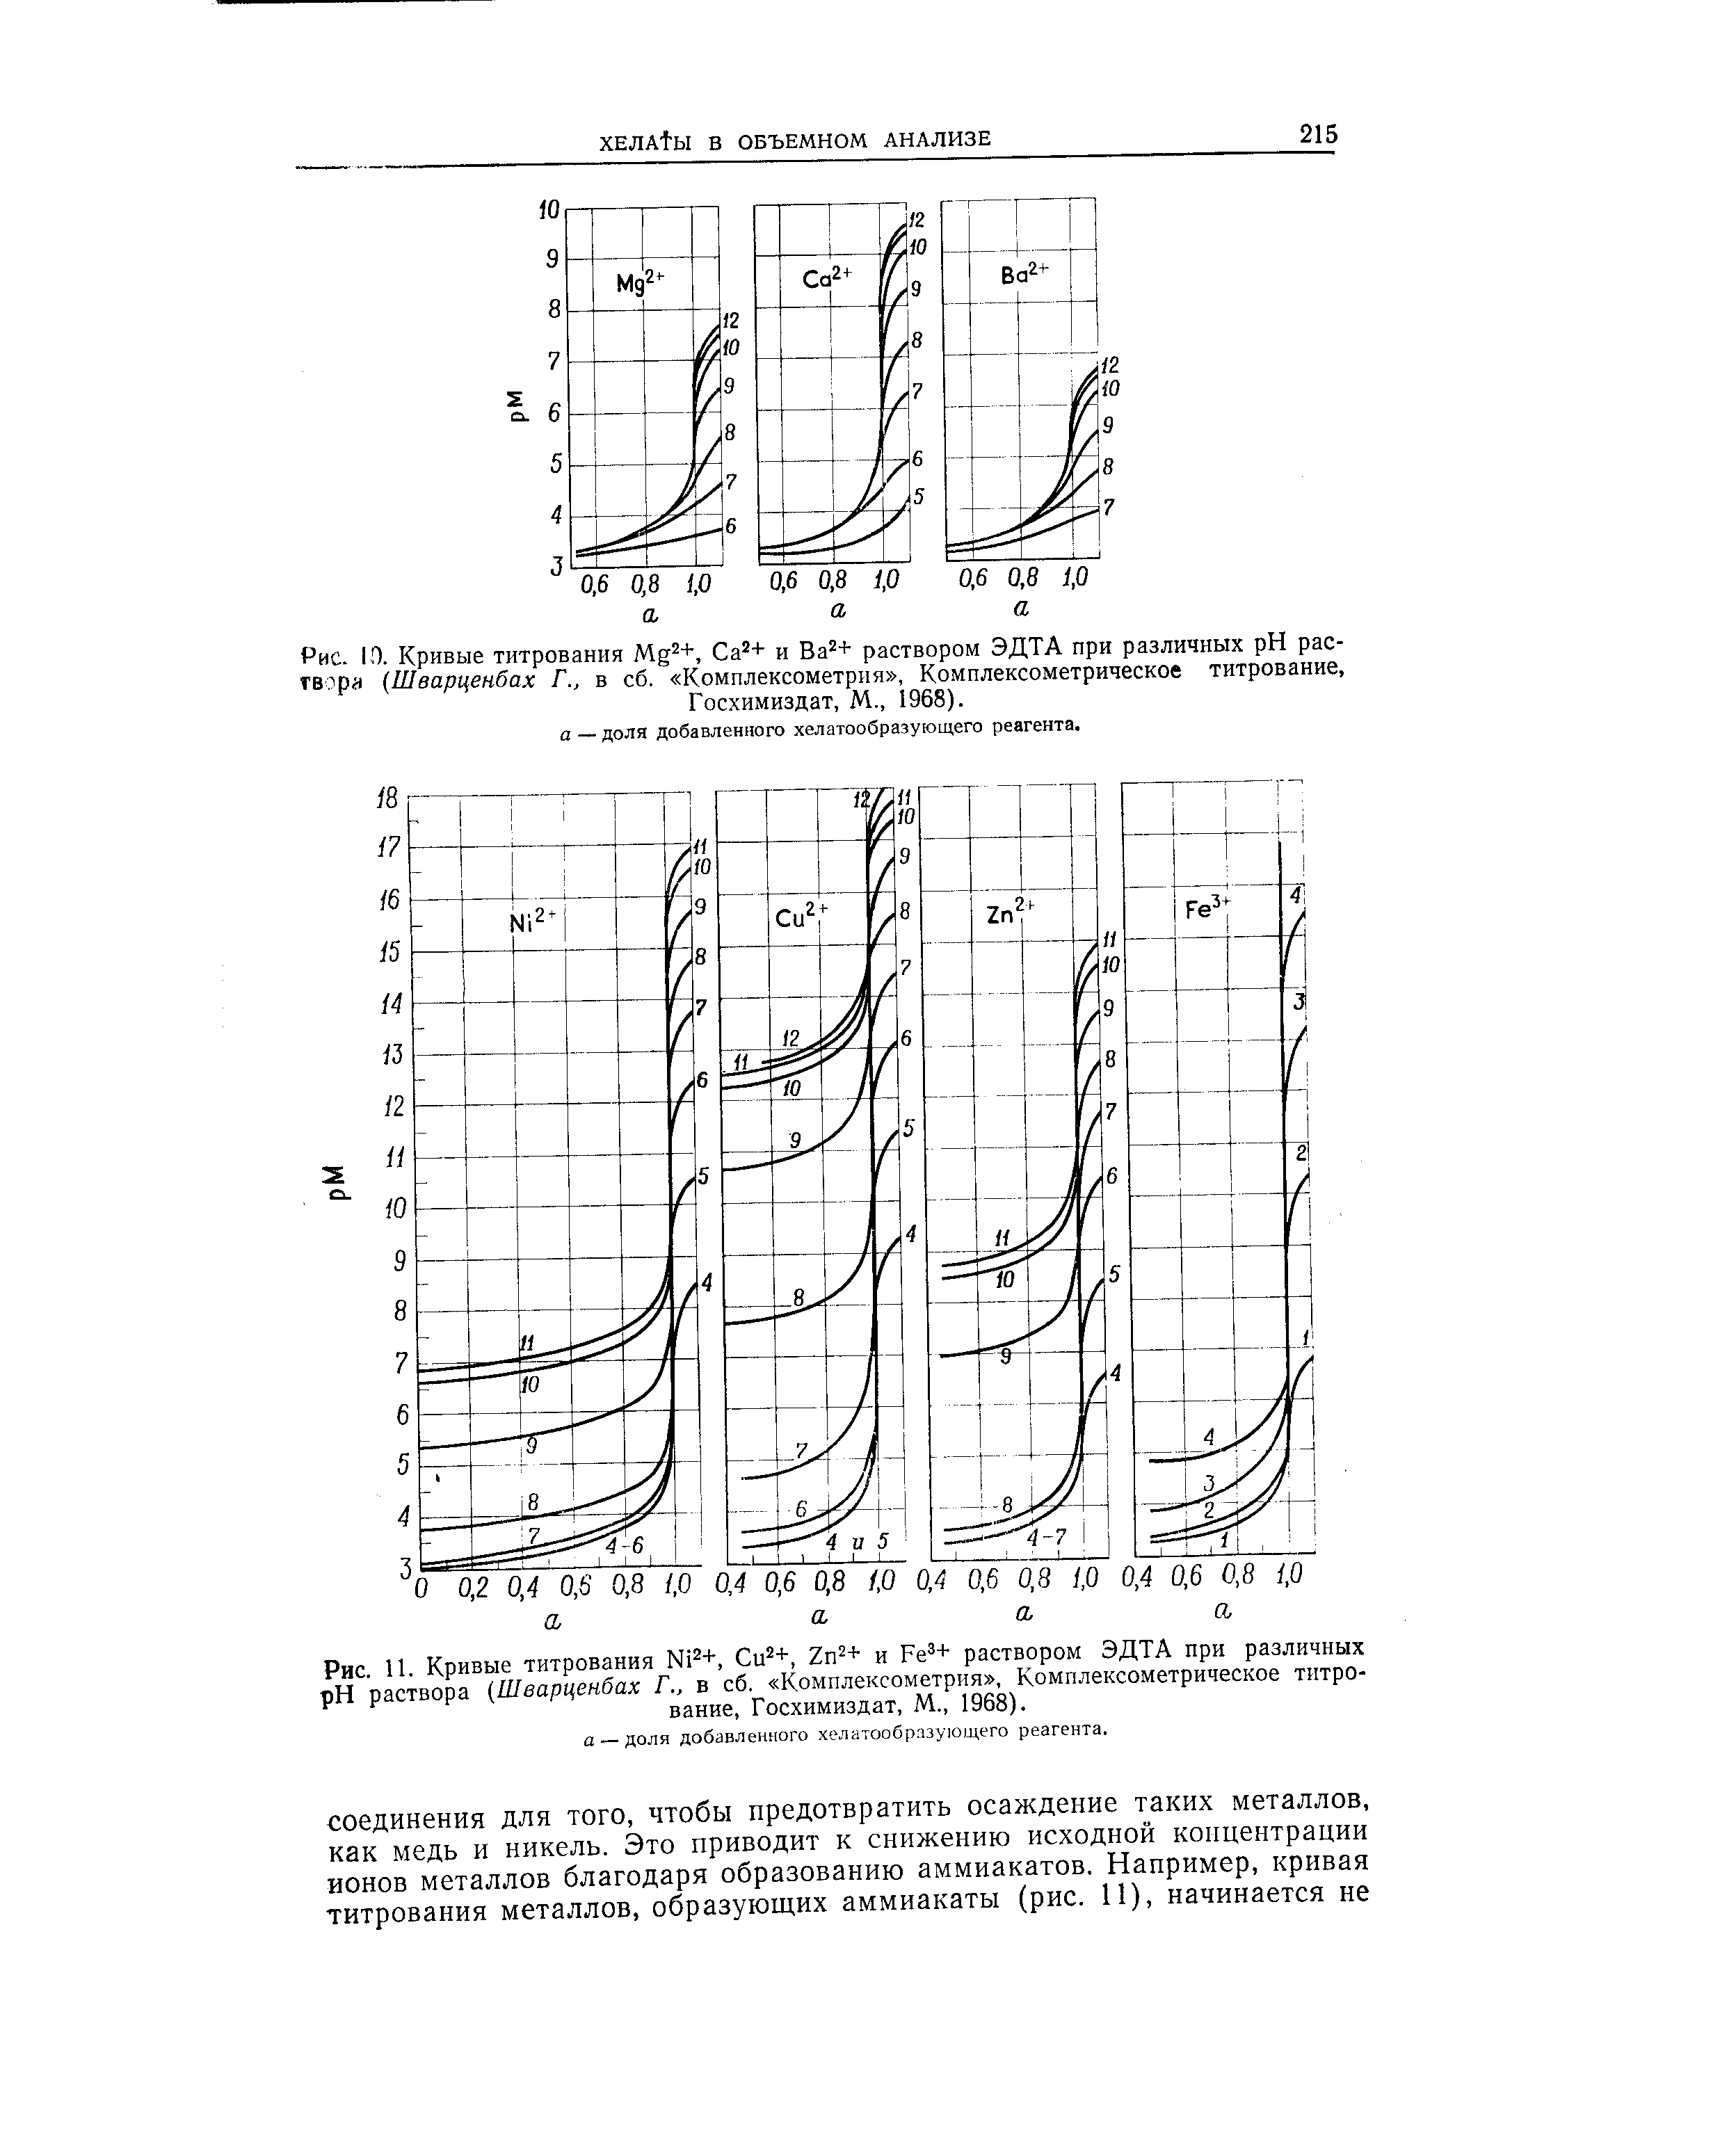 Рис 11 Кривые титрования N 2+, Си +, 2п2+ и РеЗ+ раствором ЭДТА при различных pH раствора Шварценбах Г., в сб. Комплексометрия , Комплексометрическое титрование, Госхимиздат, М., 1968).